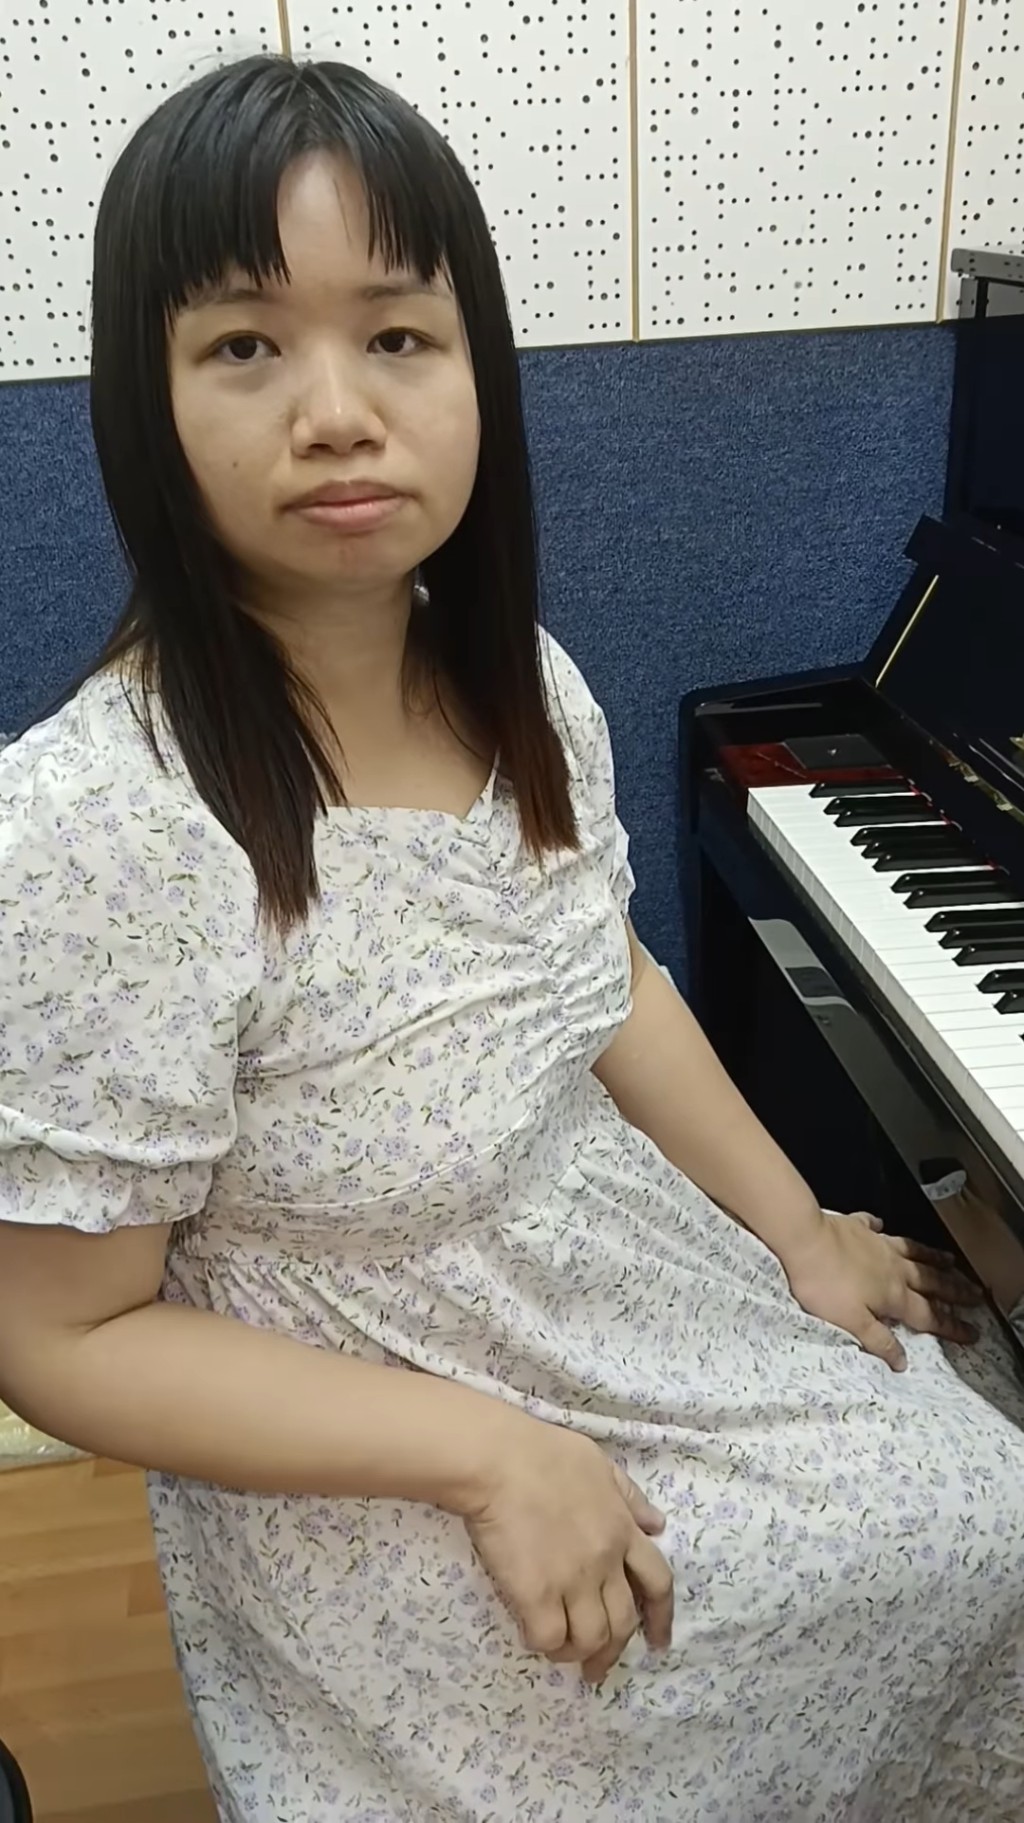 失業期間阿儀去學琴。